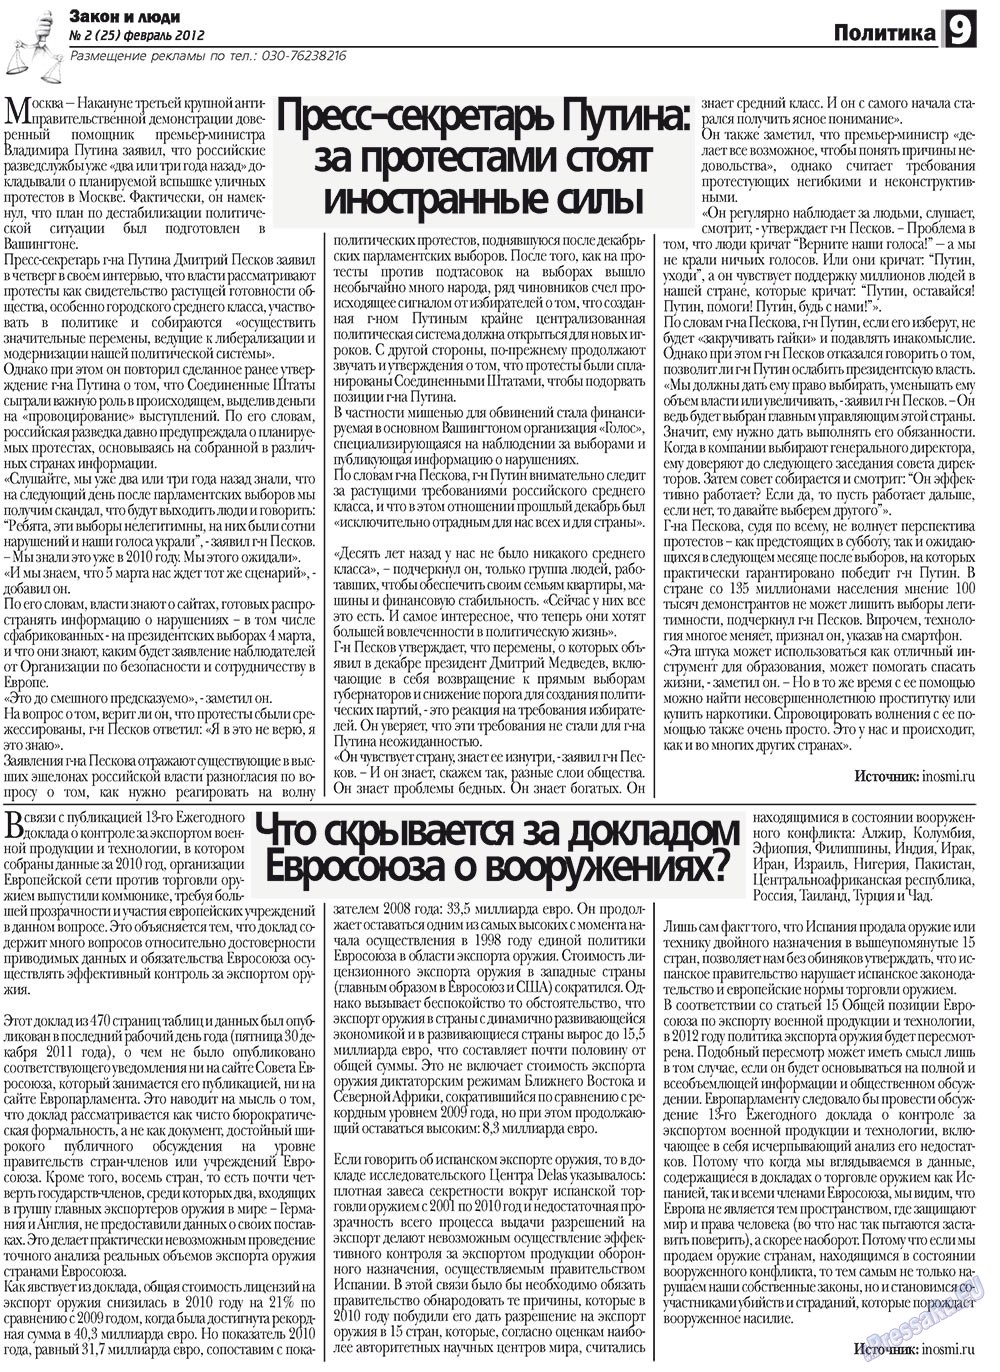 Закон и люди, газета. 2012 №2 стр.9